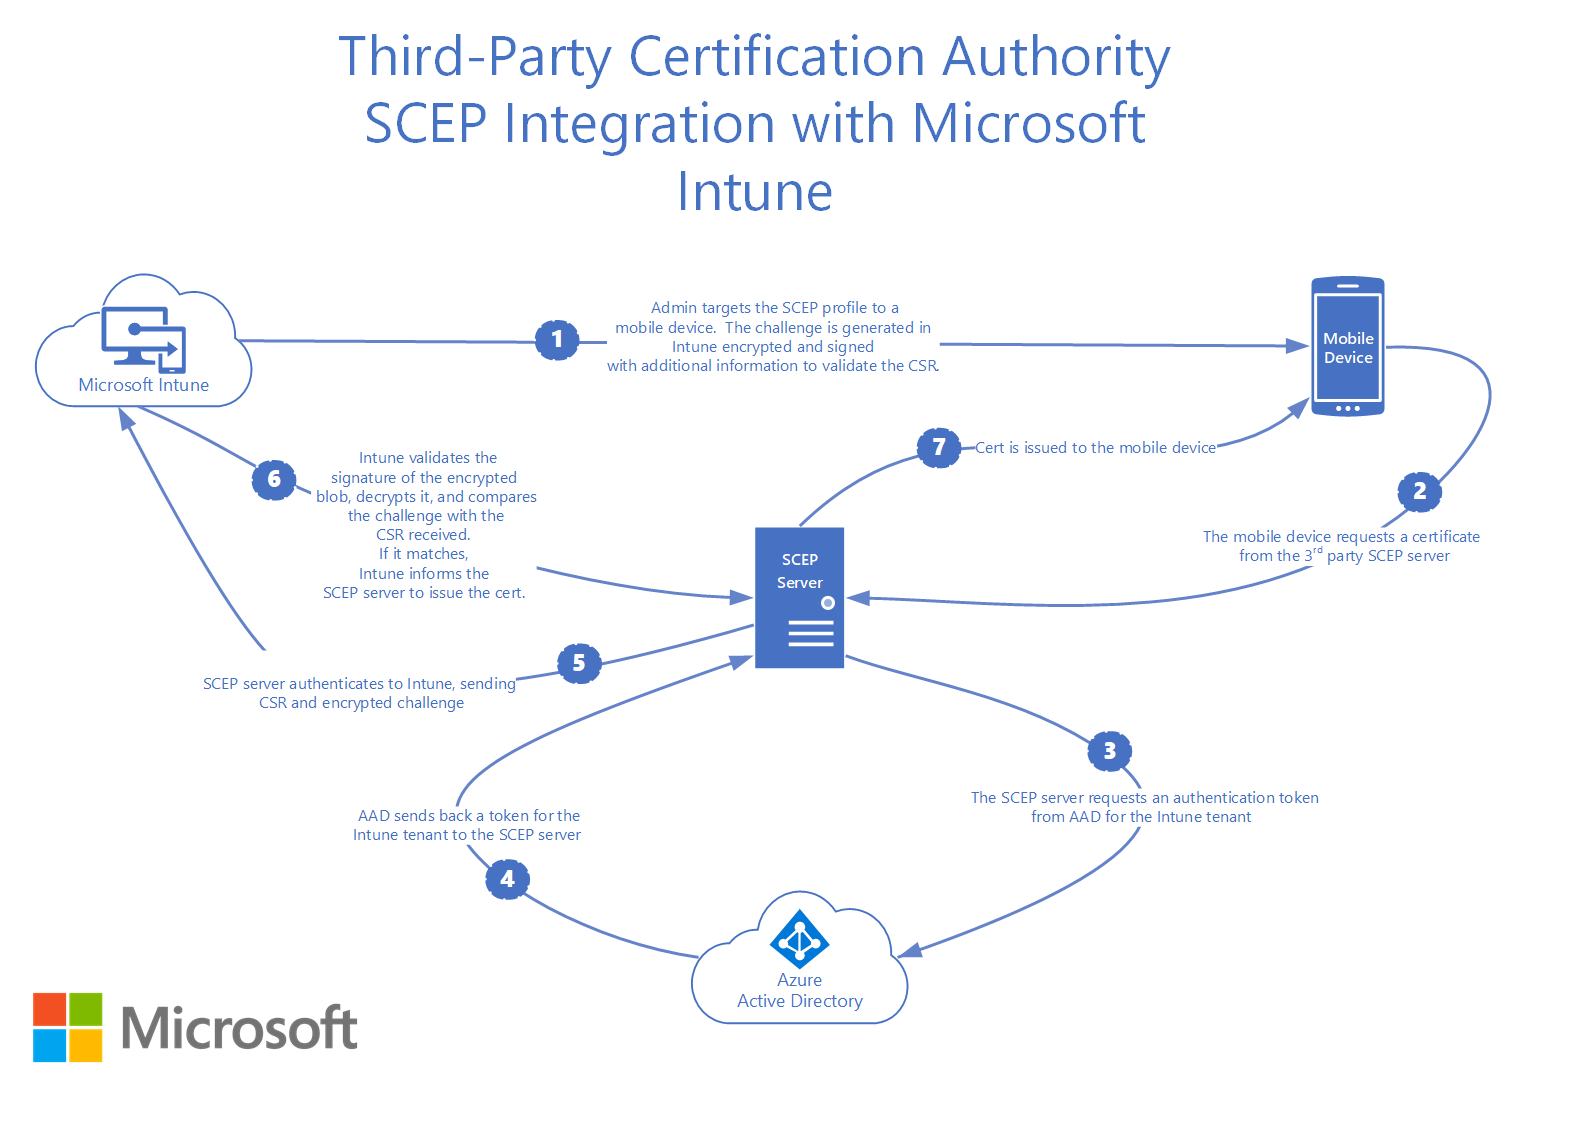 サード パーティ証明機関 SCEP と Microsoft Intune の統合方法